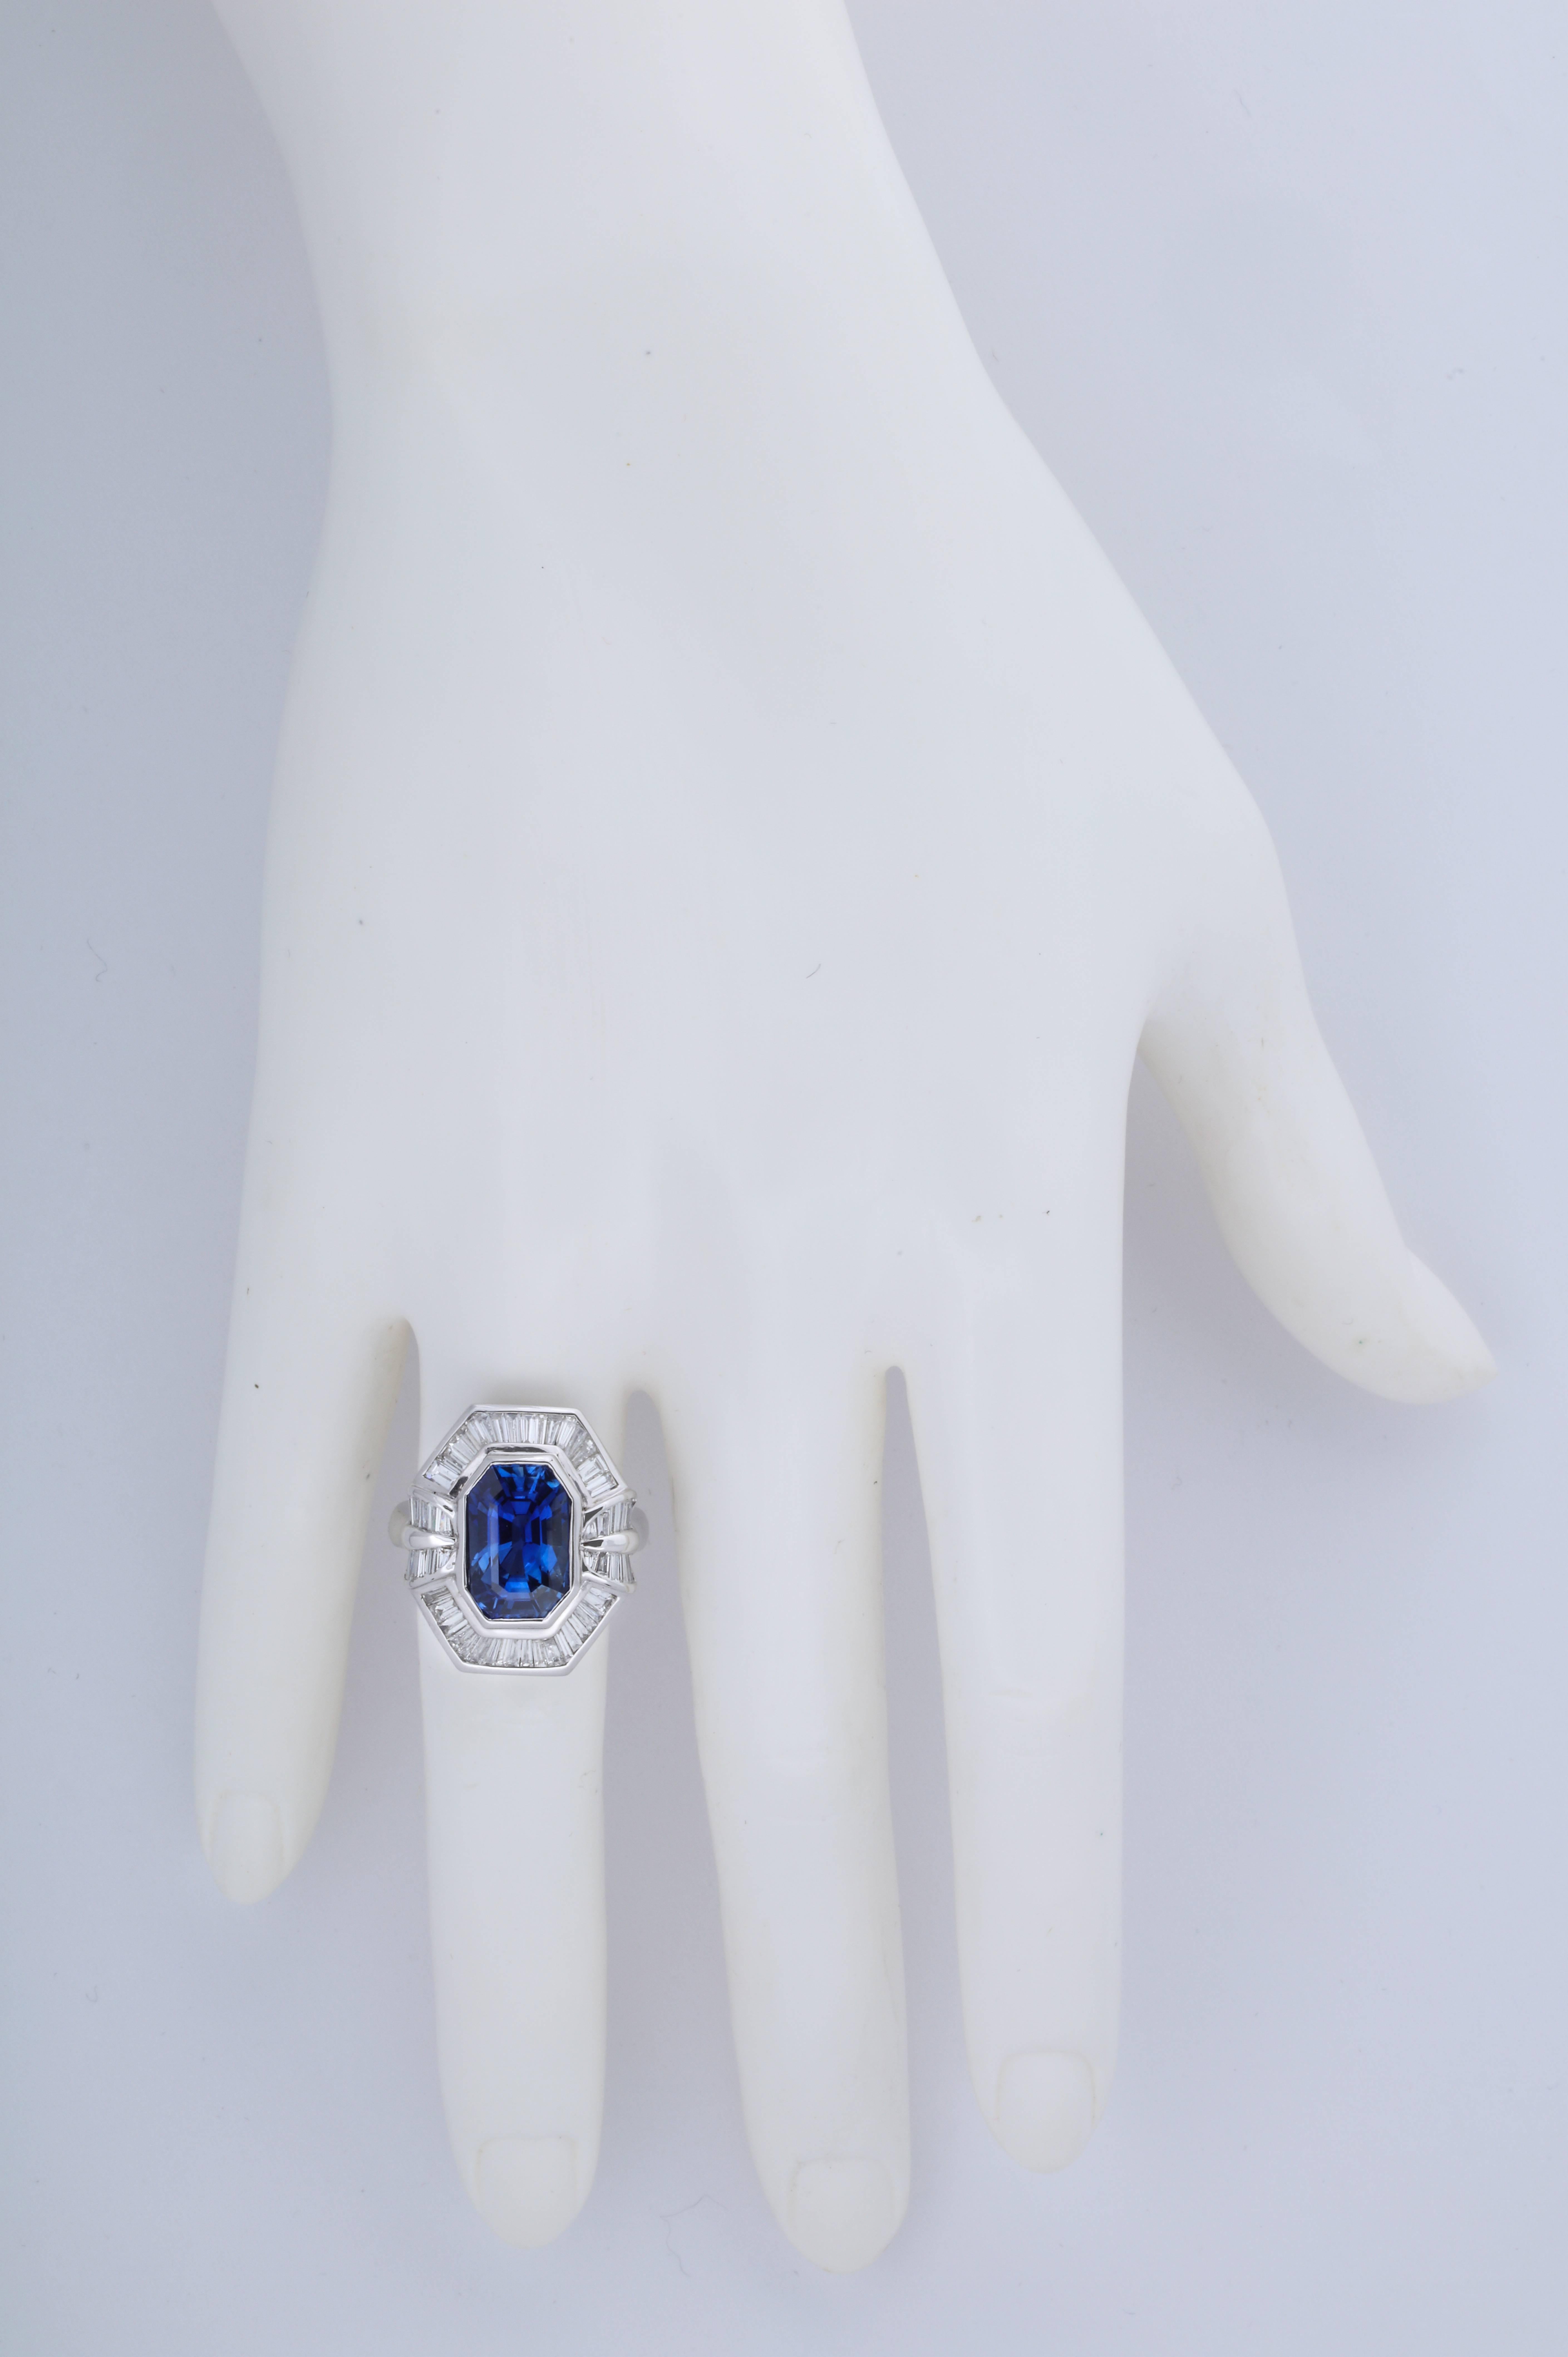 Die lange Smaragdform ist wunderbar elegant und harmoniert perfekt mit den Baguette-Diamanten in der Fassung.  Der Saphir wiegt ca. 8 Karat und es gibt ca. 2,20 Karat feine, weiße Baguette-Diamanten.

Der Ring wurde in einer der besten Werkstätten